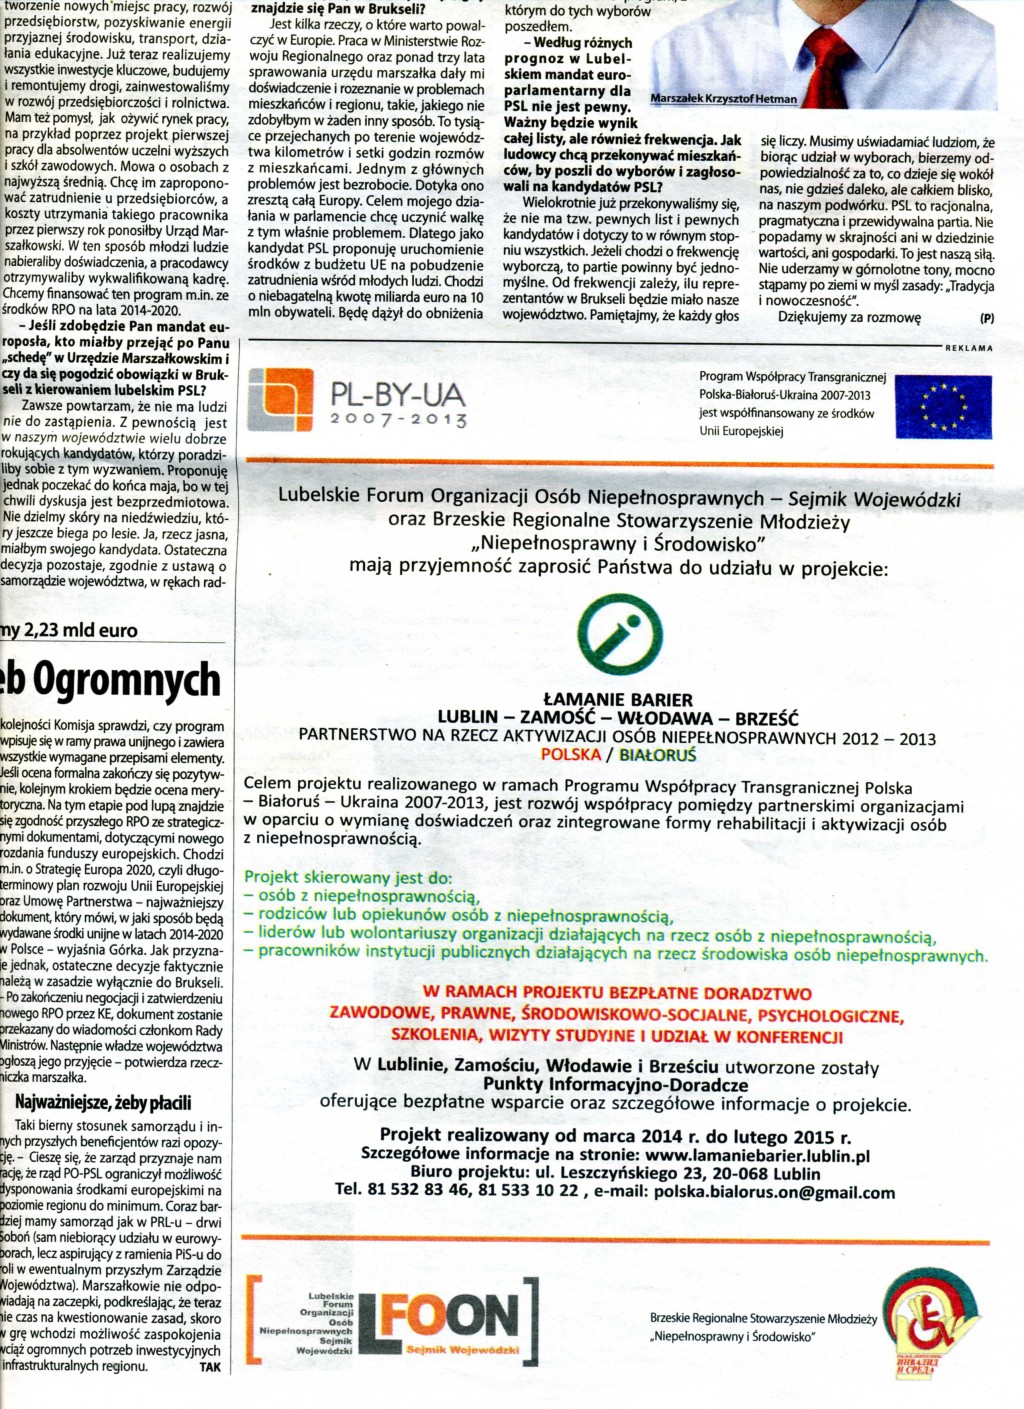 Tygodnik Lubelski NOWY TYDZIEŃ 20 kwietnia - 27 kwietnia 2014